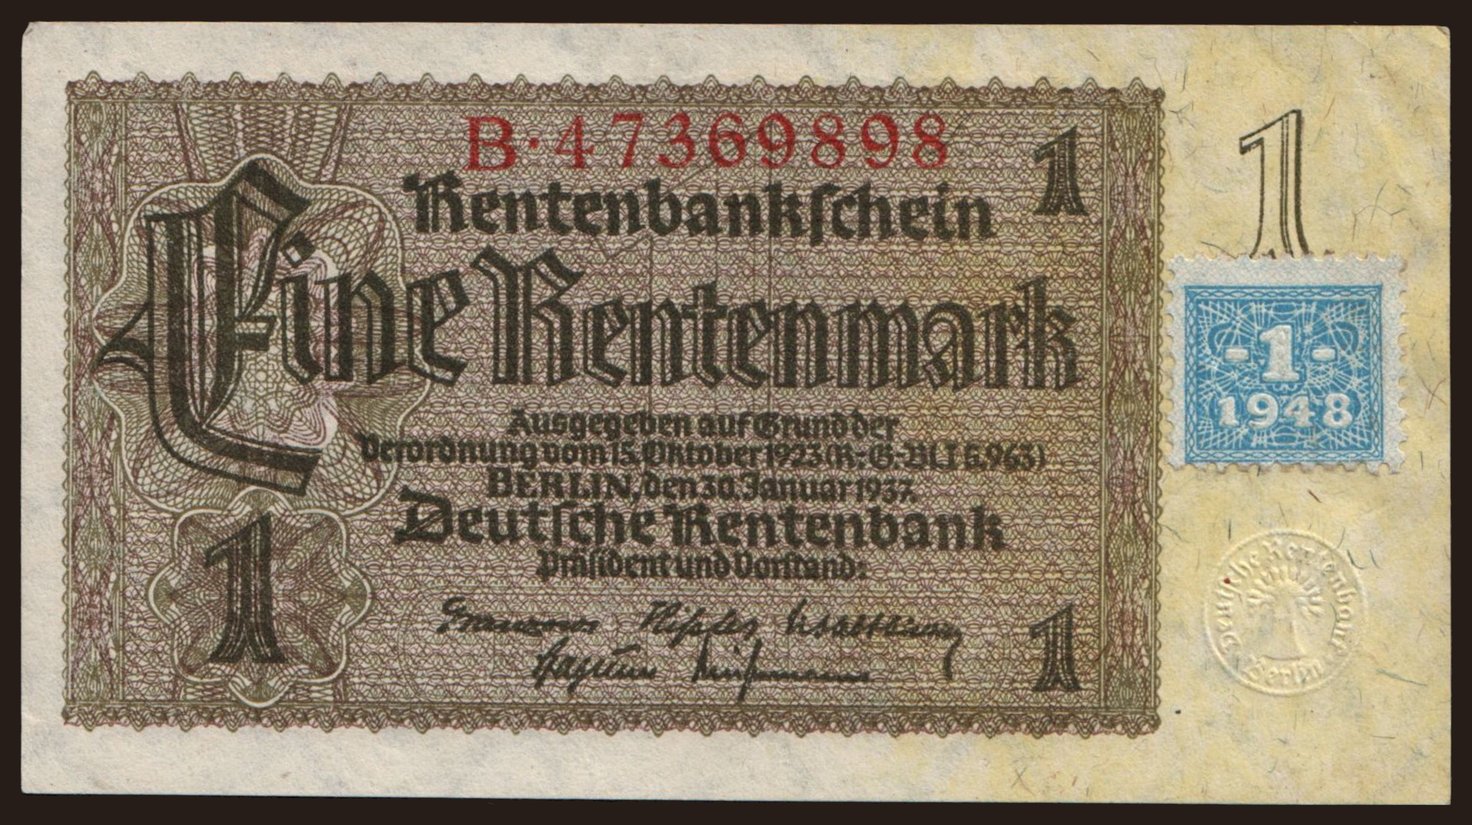 1 Rentenmark, 1937(48)